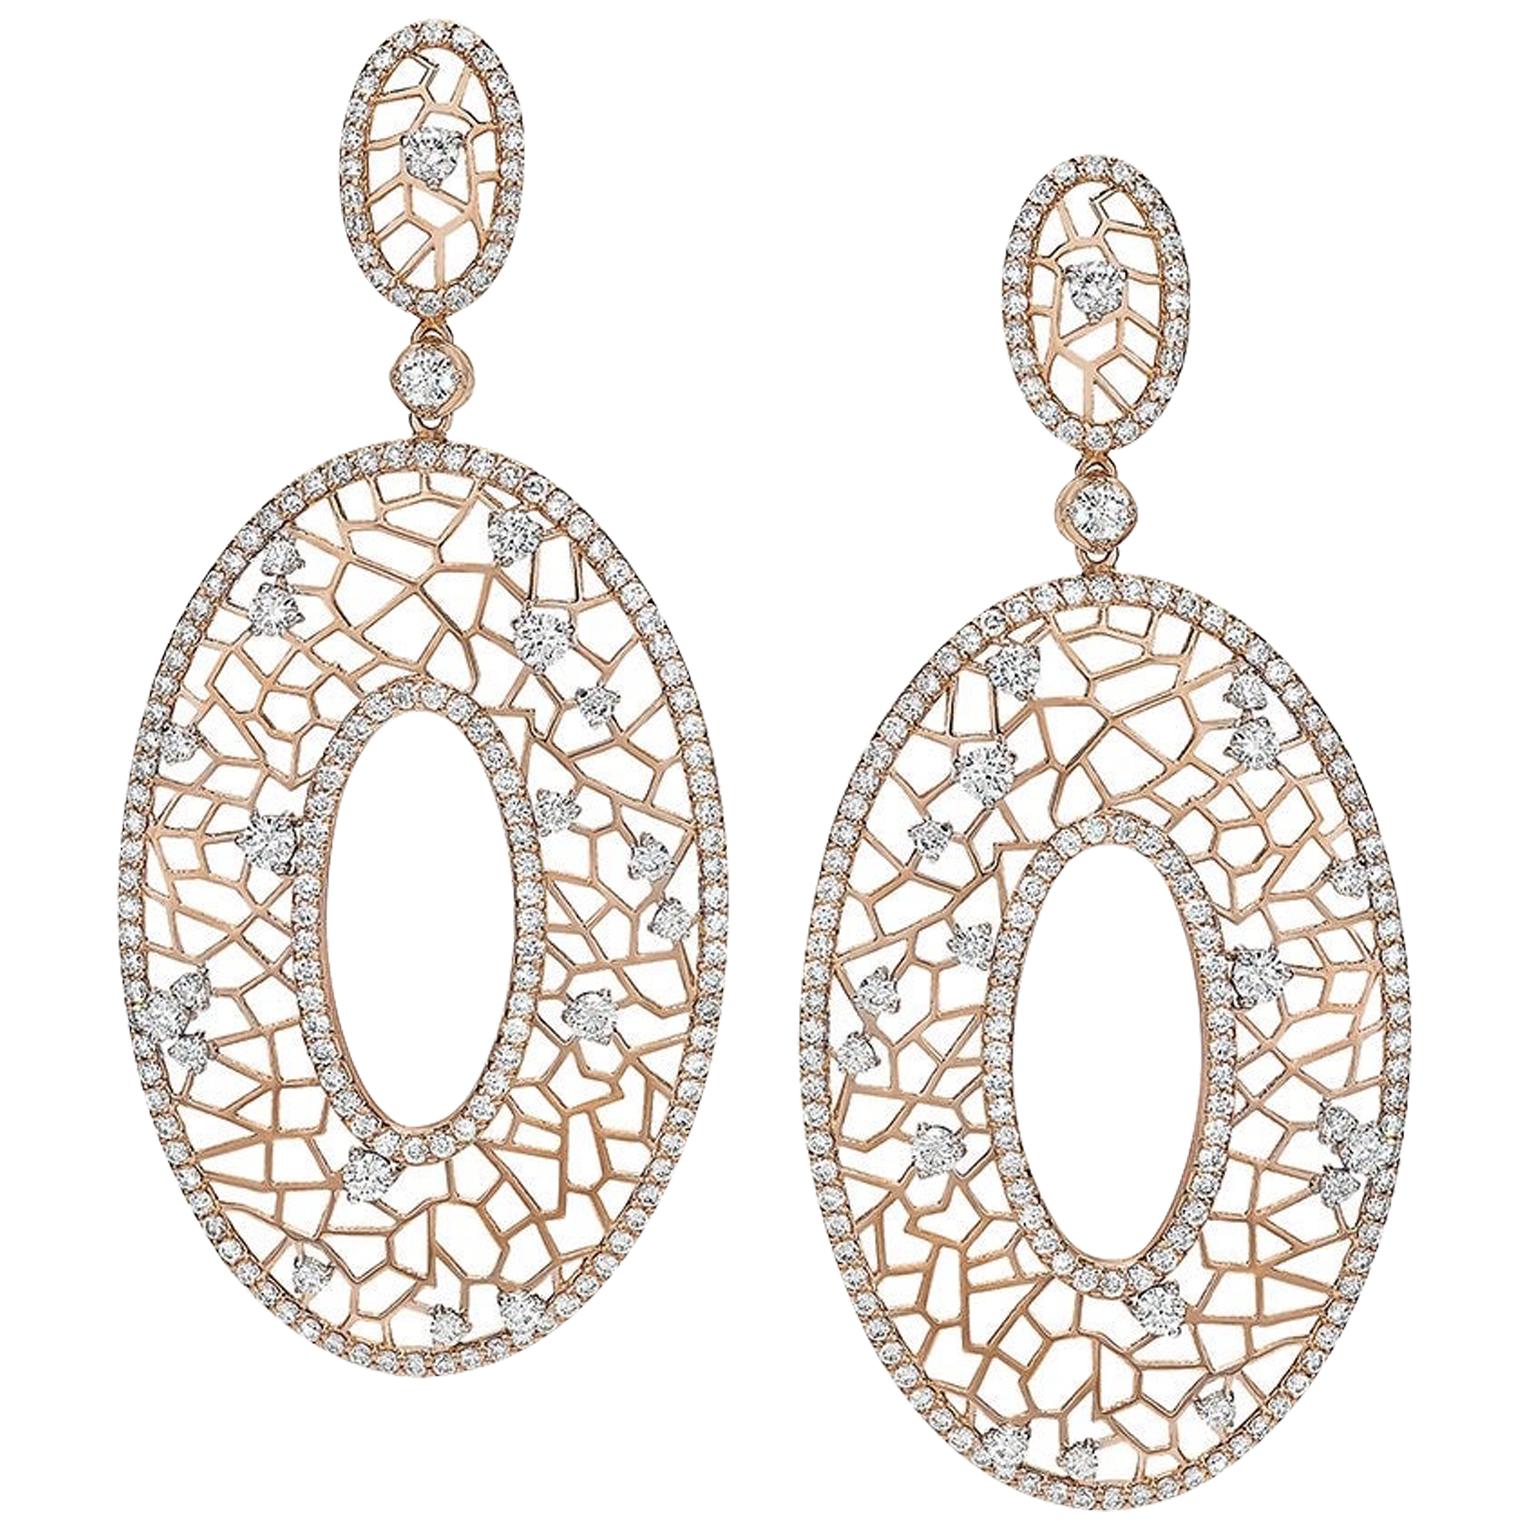 Crivelli 18 Karat Rose Gold Oval Pendant Drop Earrings with 4.91 Carat Diamonds